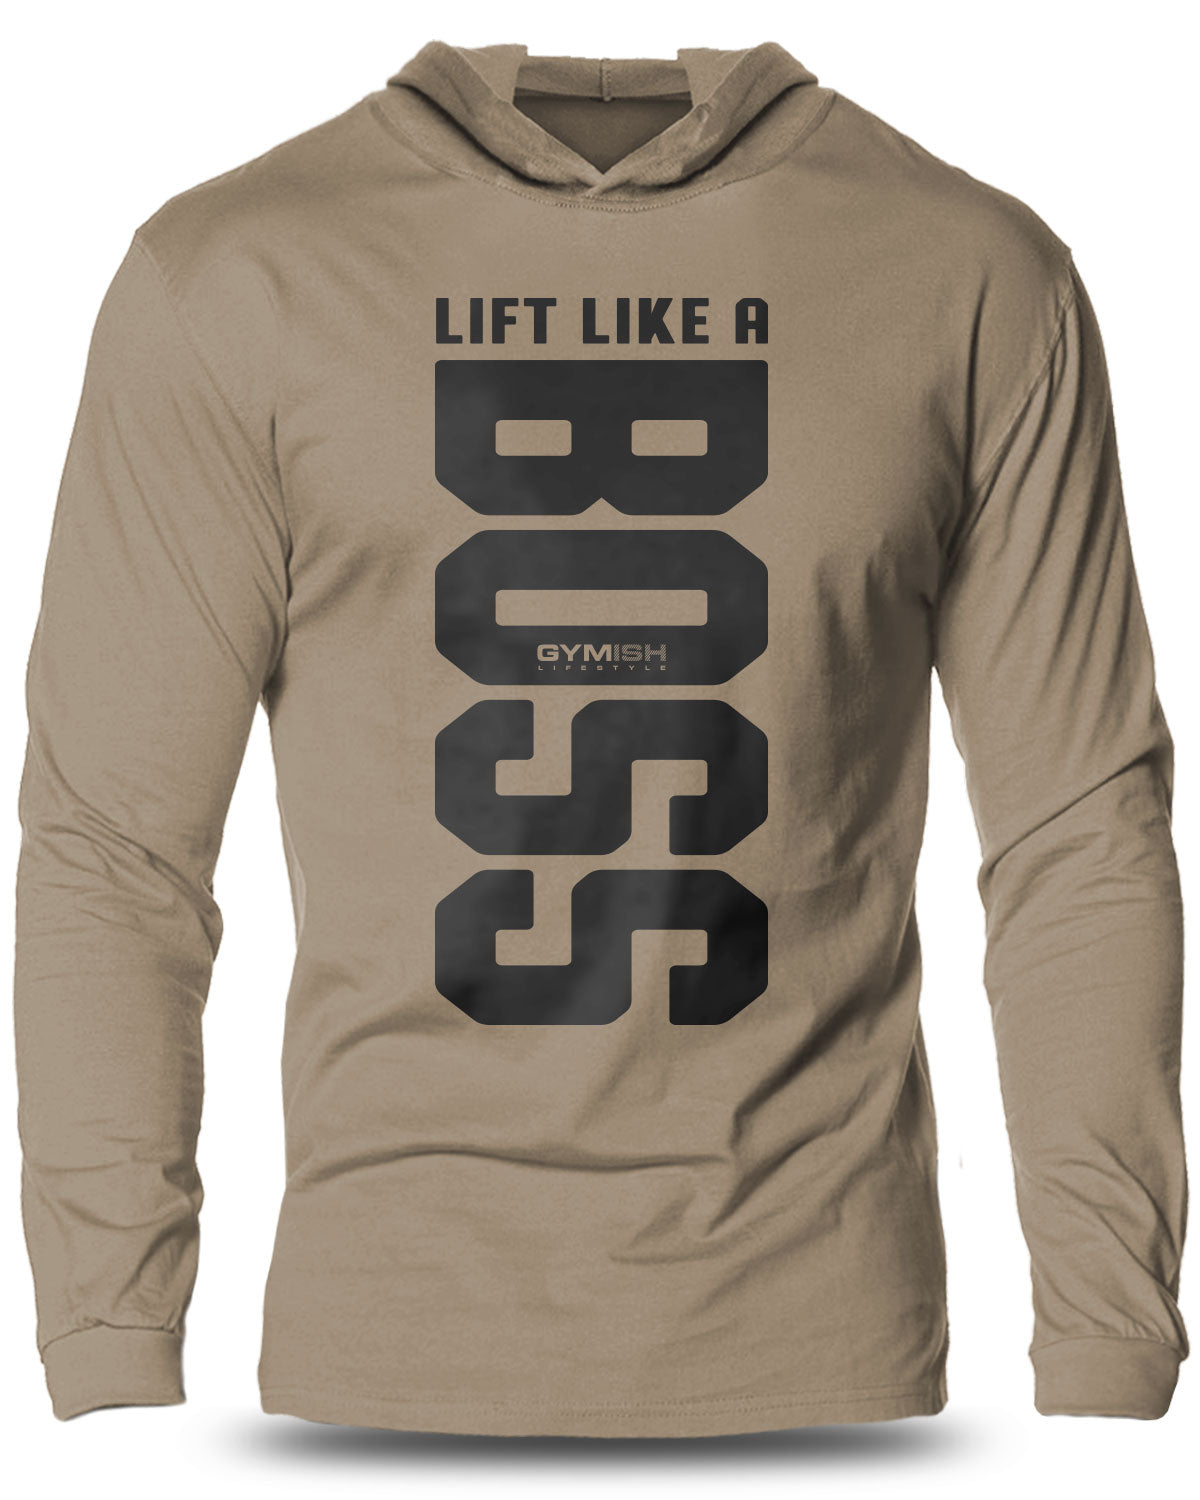 012-Lift Like A BOSS Lightweight Long Sleeve Hooded T-shirt for Men